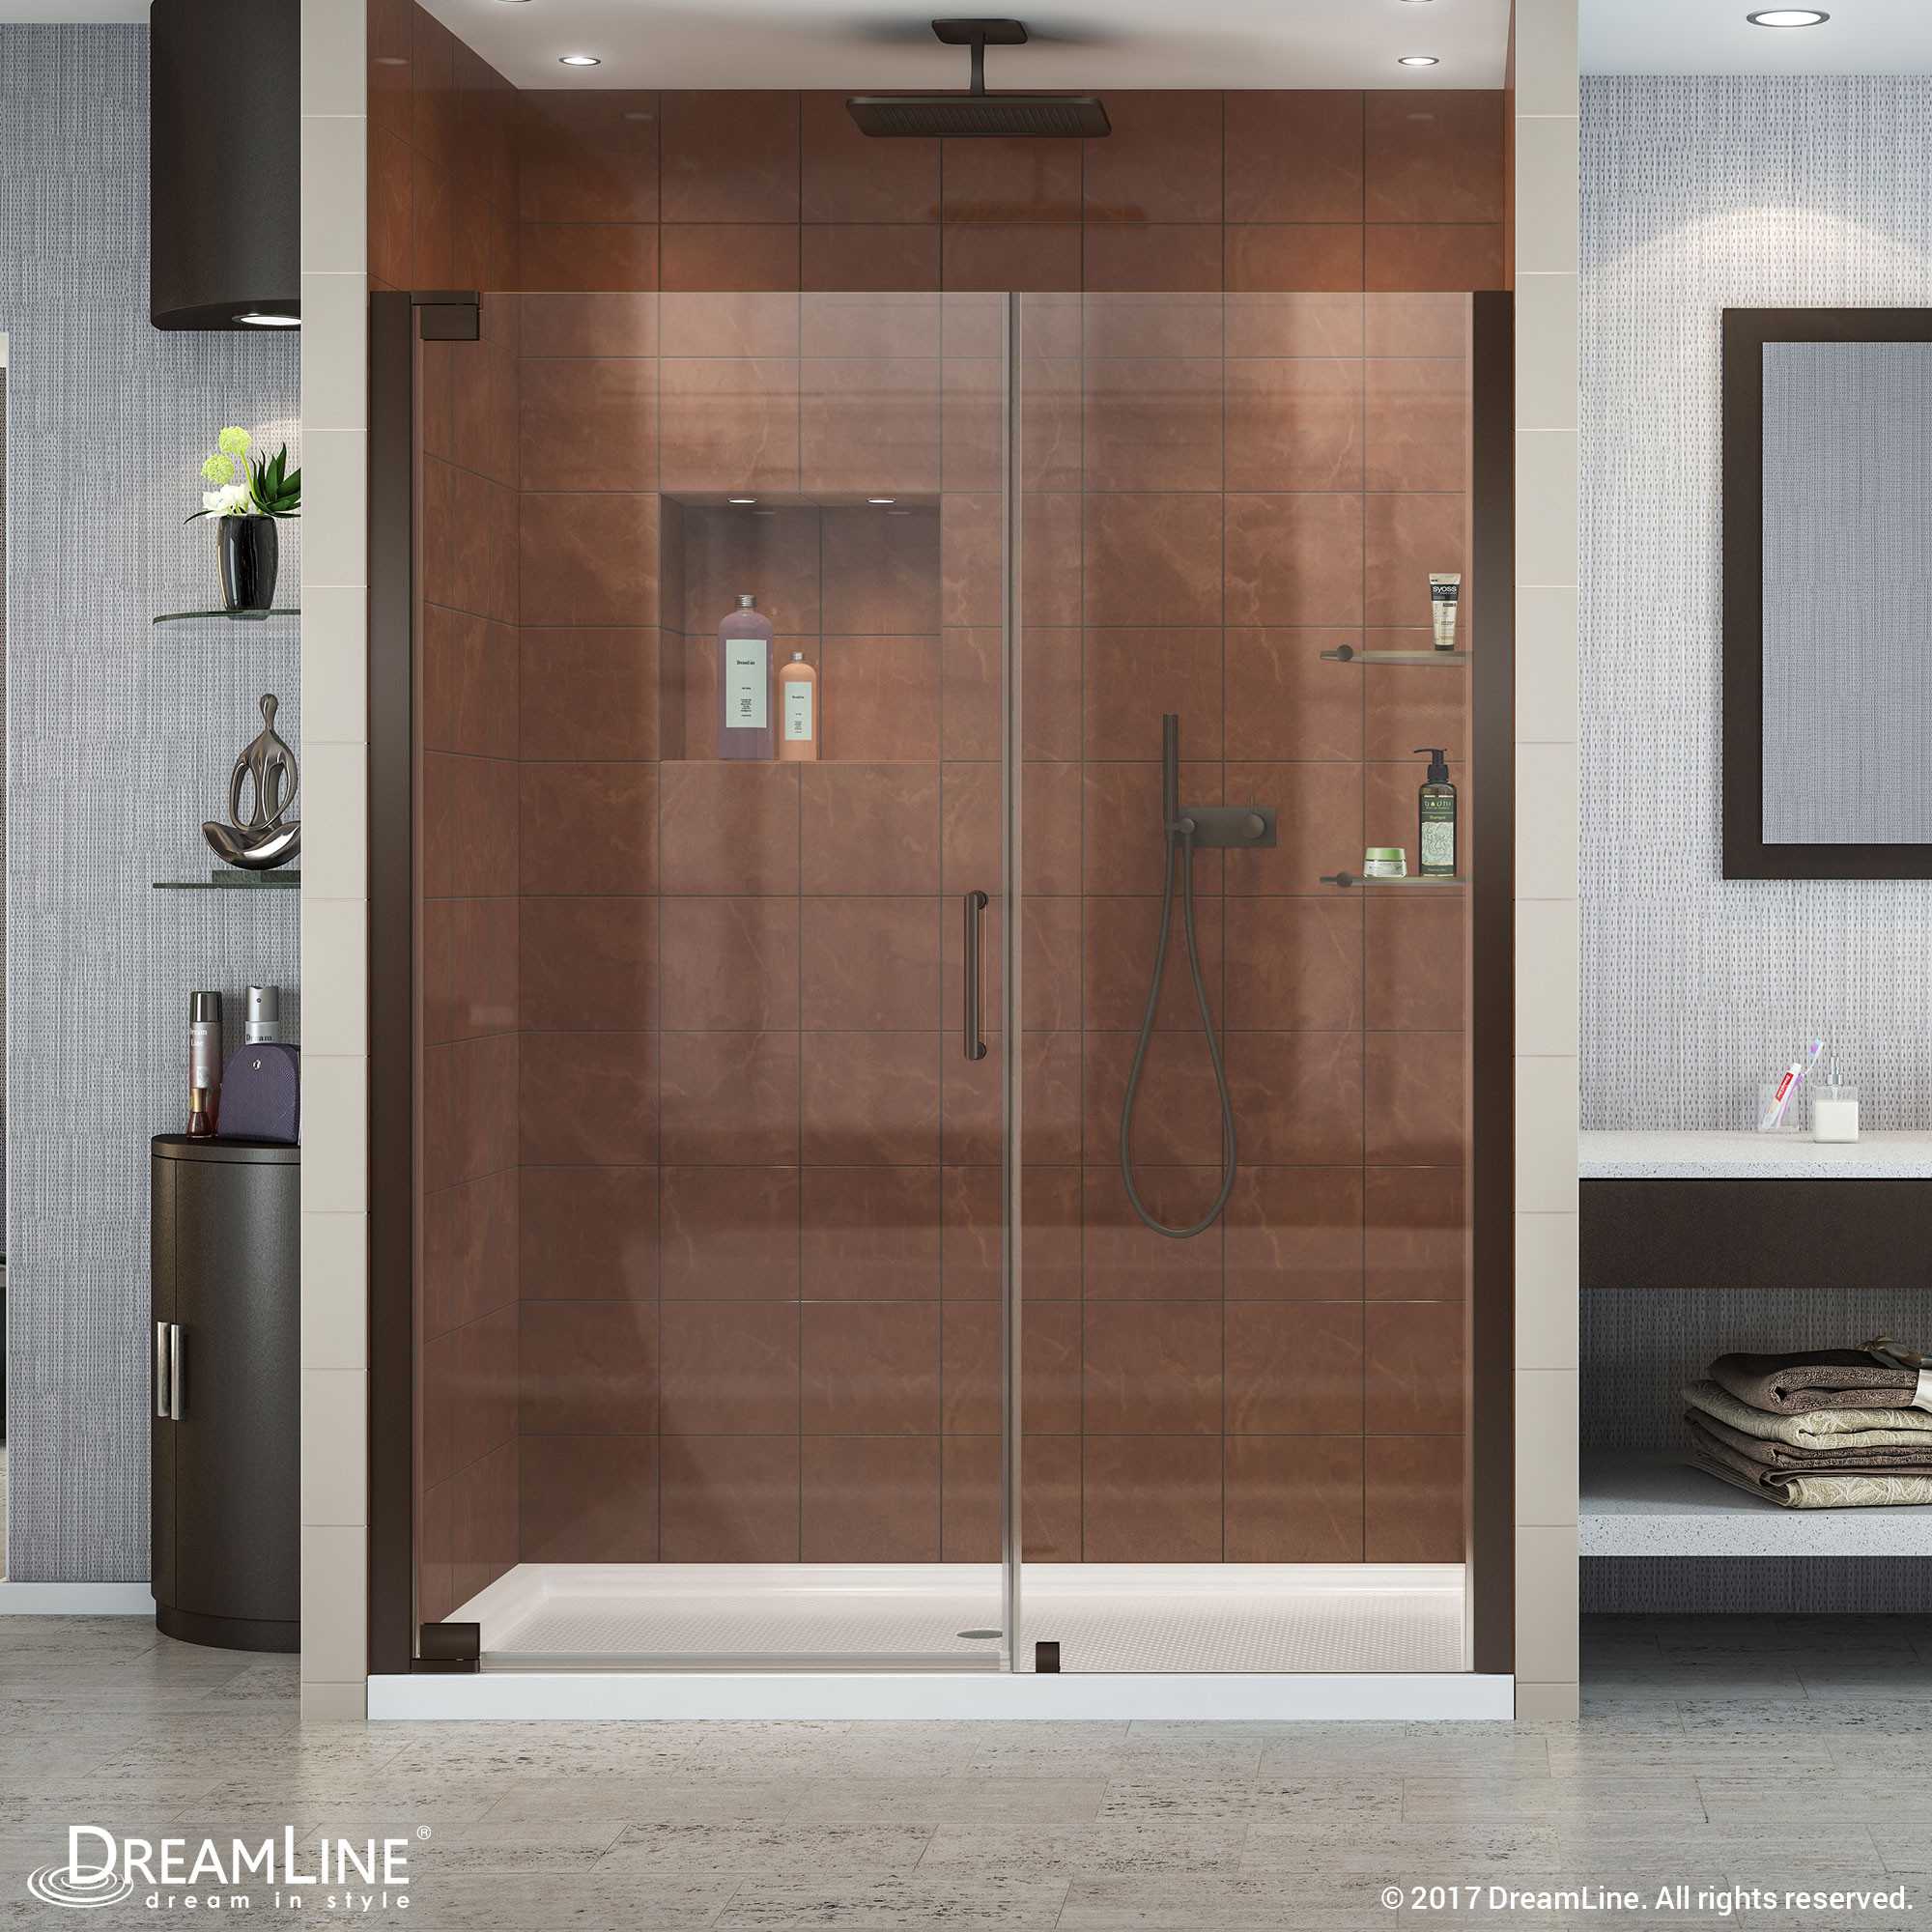 DreamLine SHDR-4151720-06 Oil Rubbed Bronze Elegance 51 to 53" Frameless Pivot Clear Shower Door